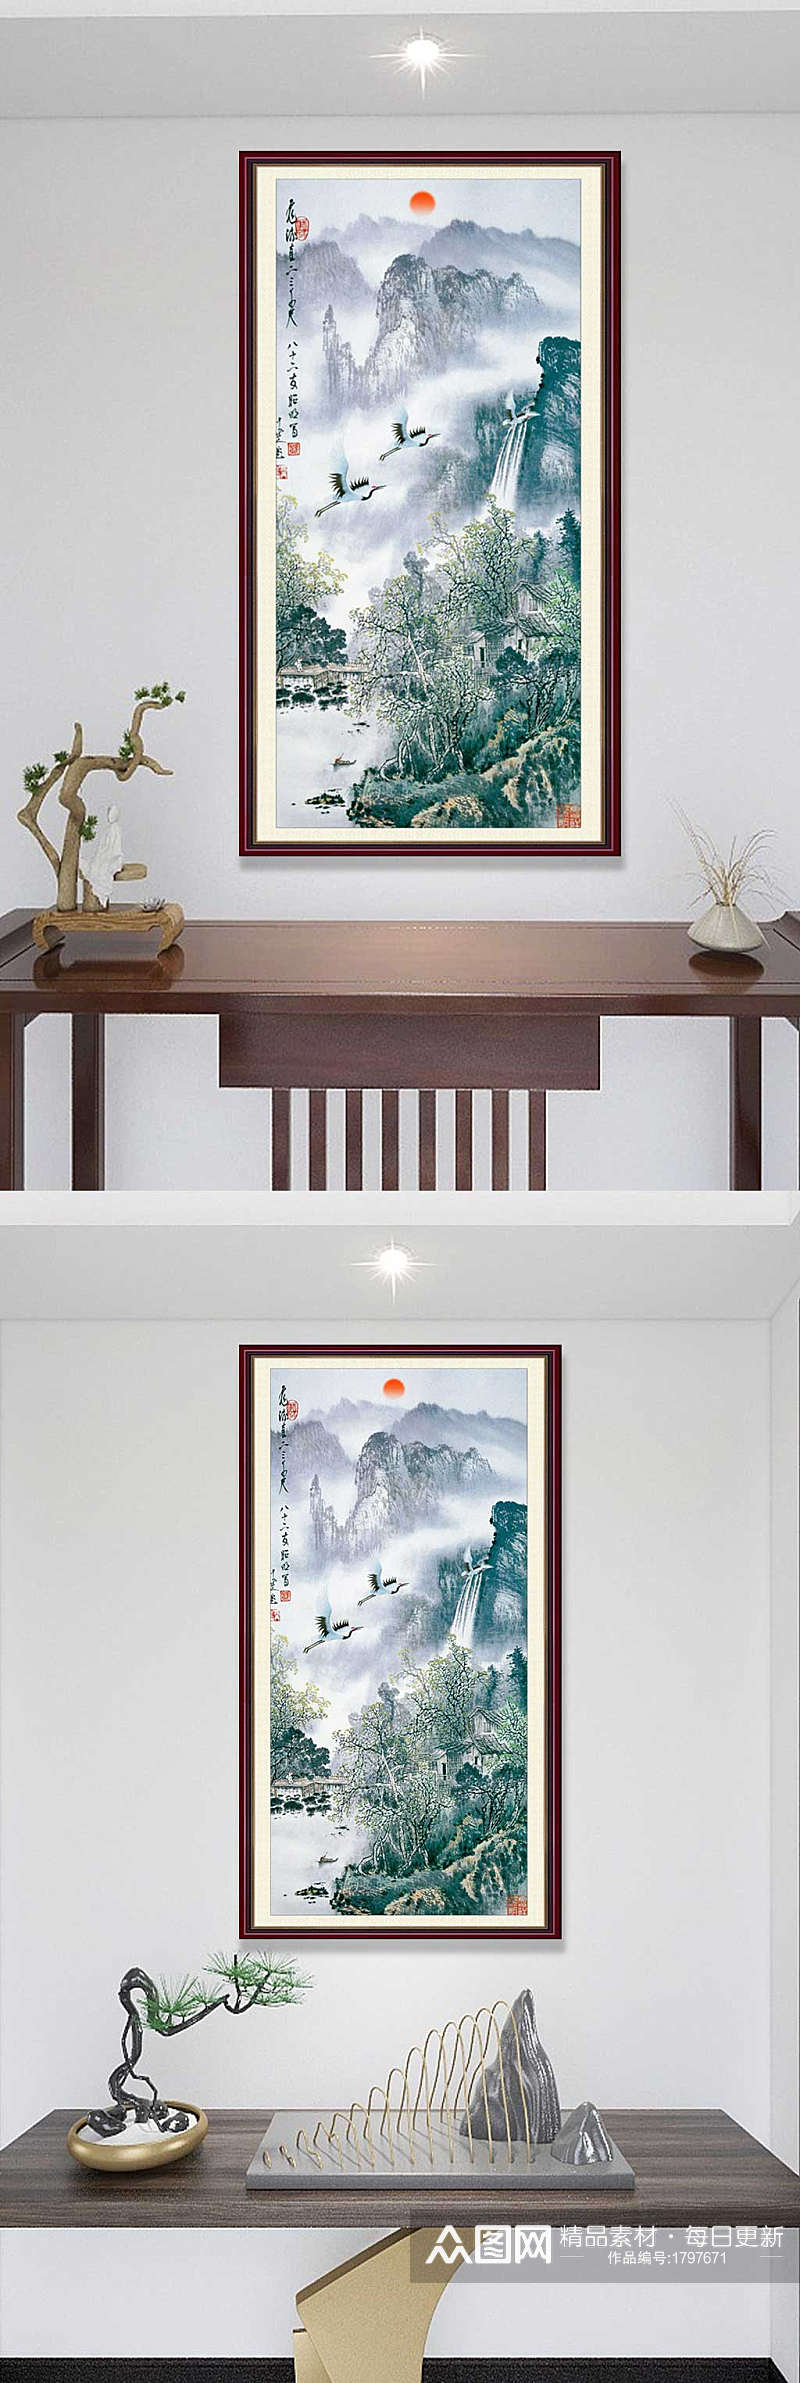 中式风格国画装饰画素材